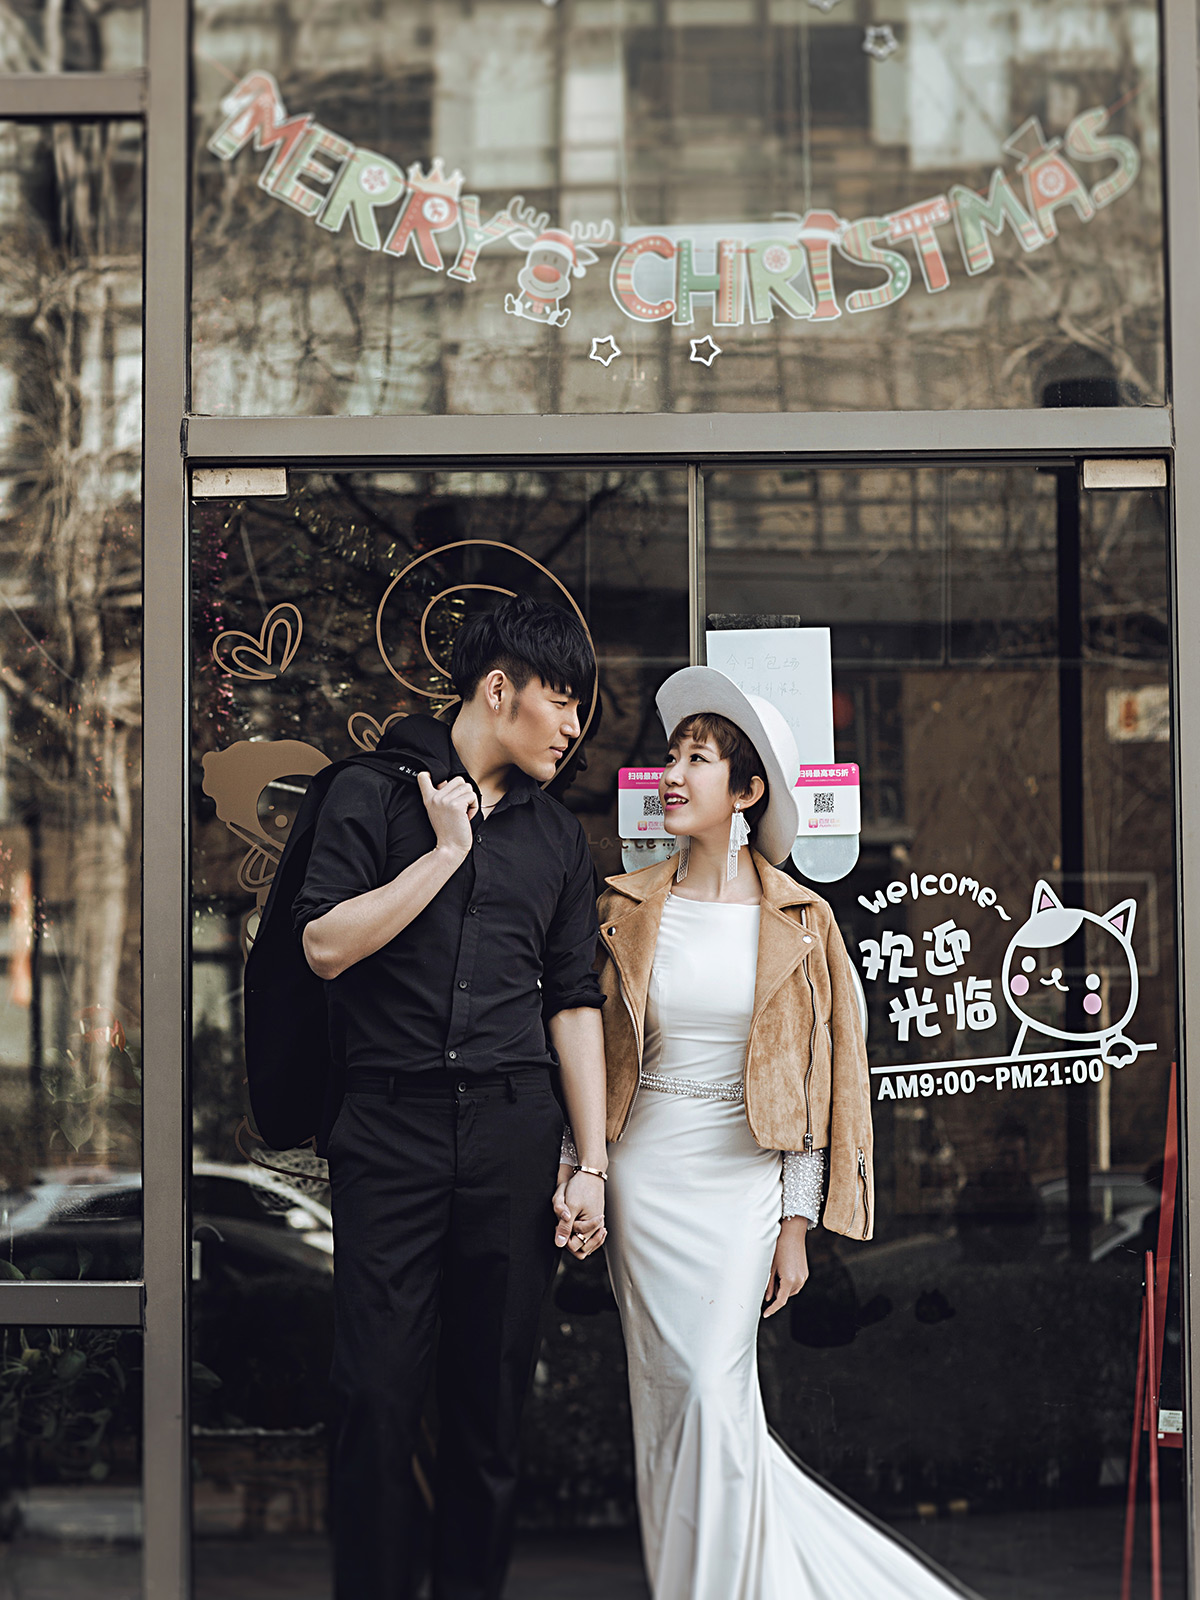 520时尚街拍婚纱照-北京北京水晶之恋婚纱摄影-百合婚礼